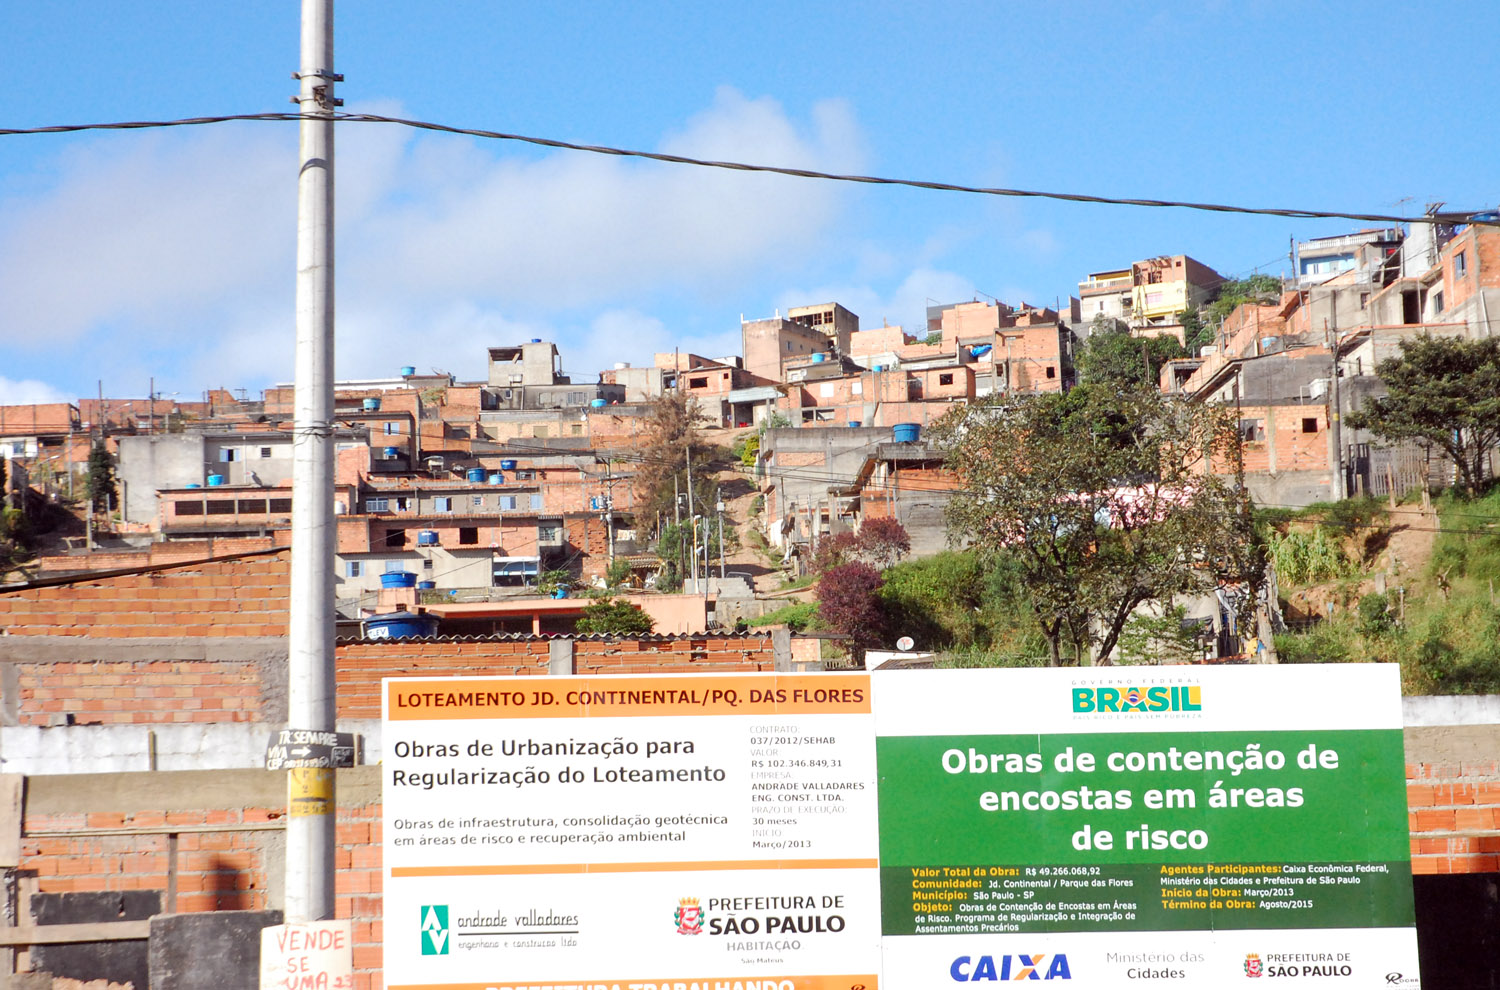 Obras de urbanização no Pq. das Flores, na região de São Mateus.